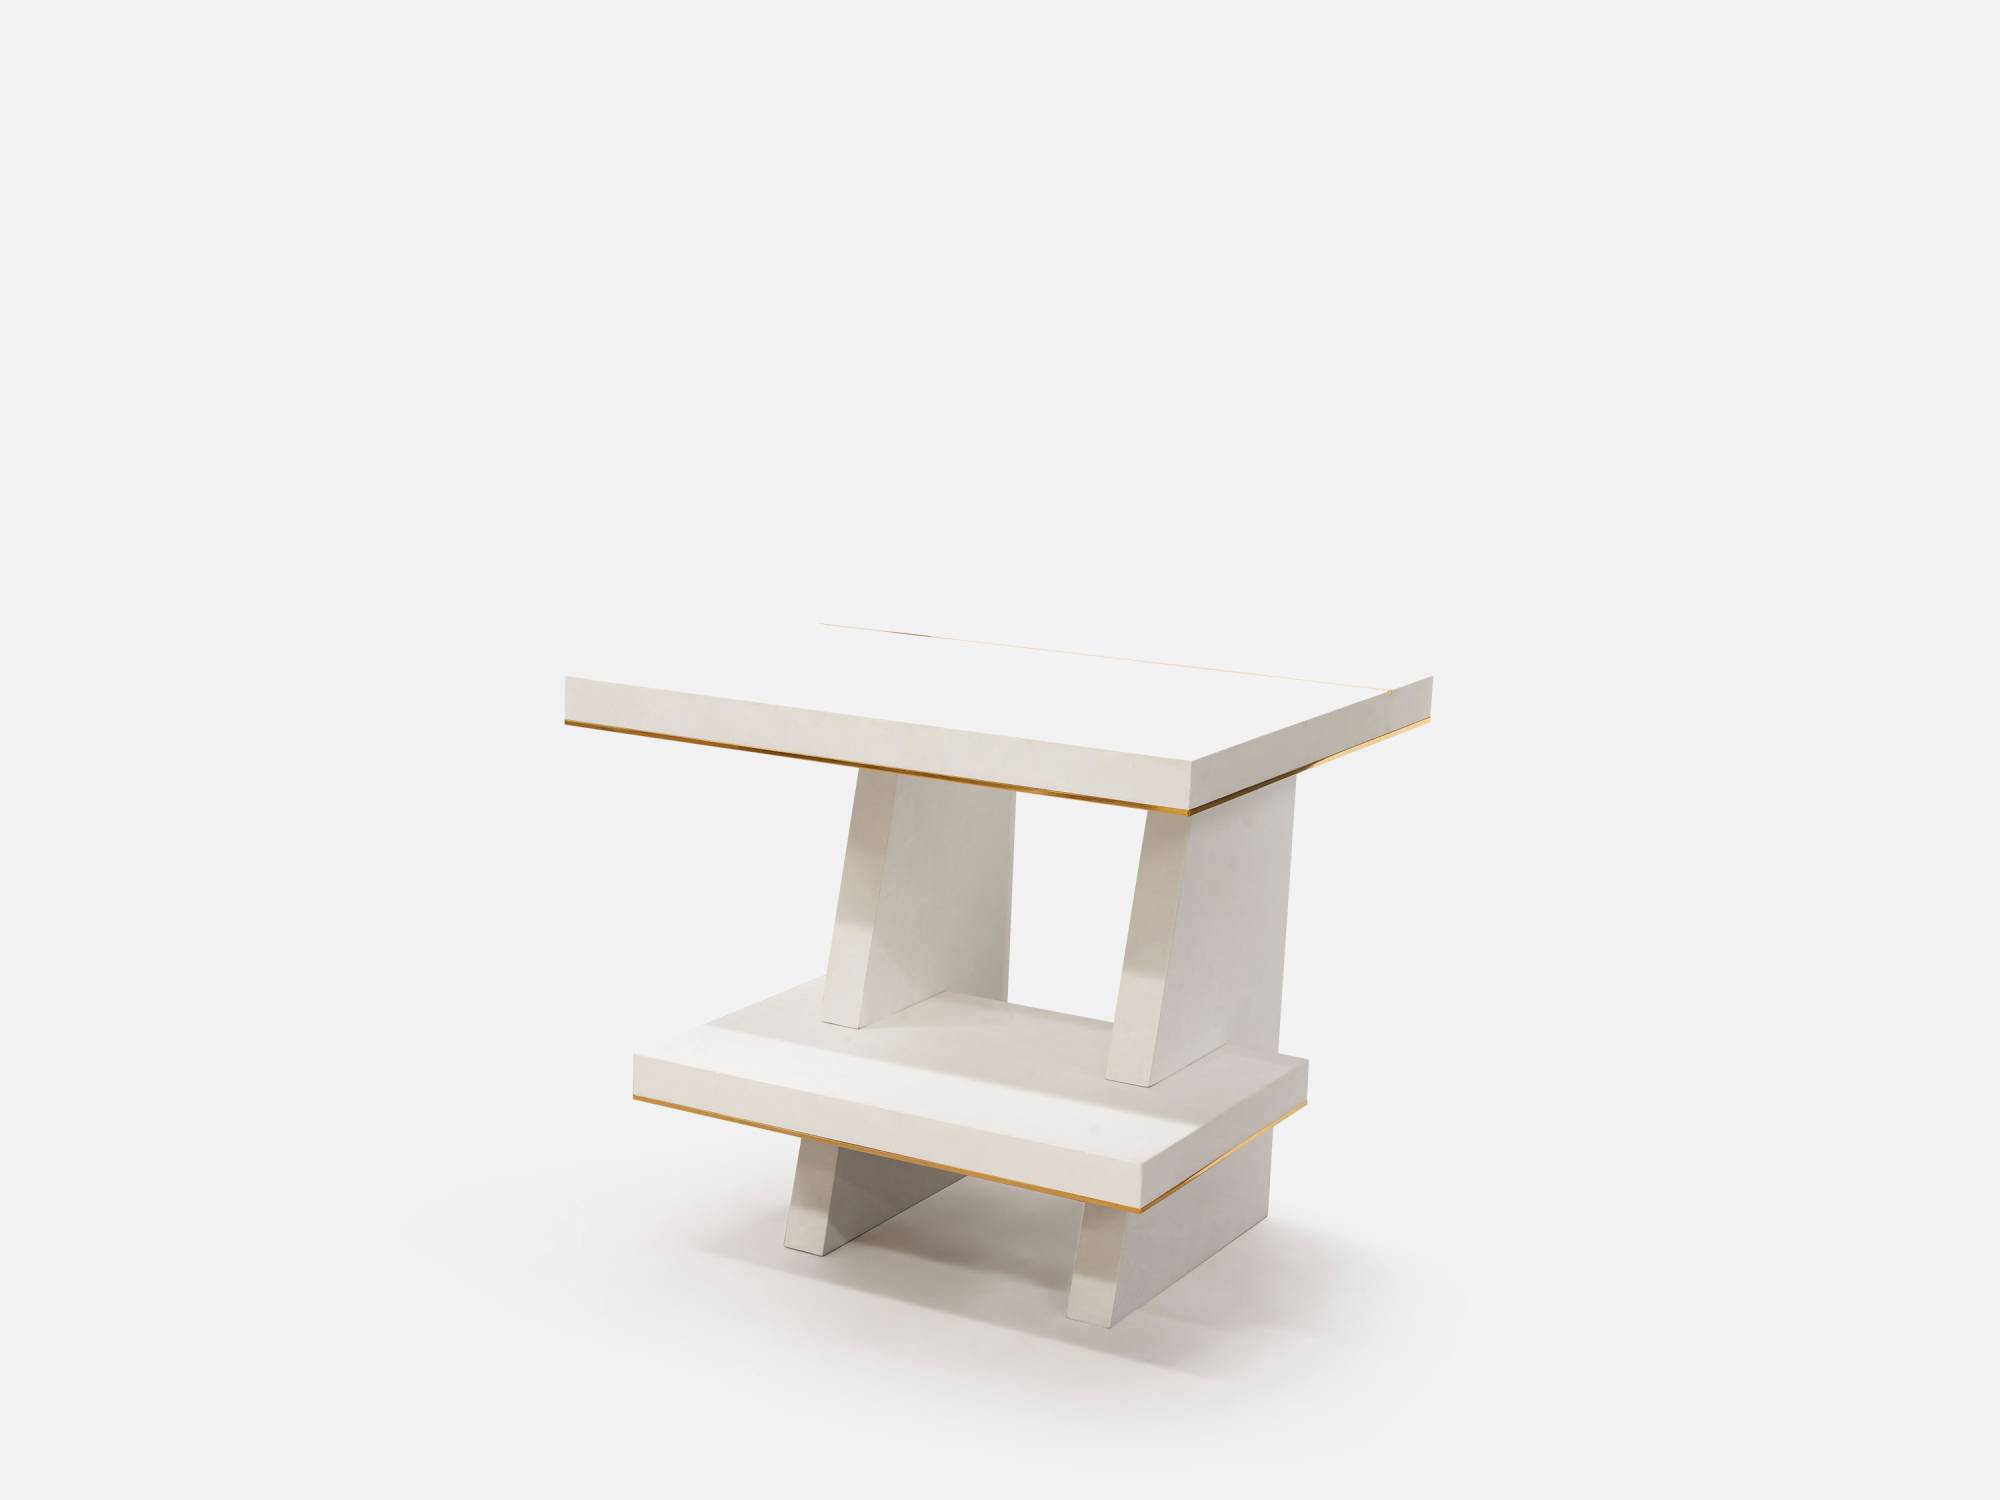 ART. 2286 – C.G. Capelletti Italian Luxury Classic Small tables. Made in Italy classic interior design